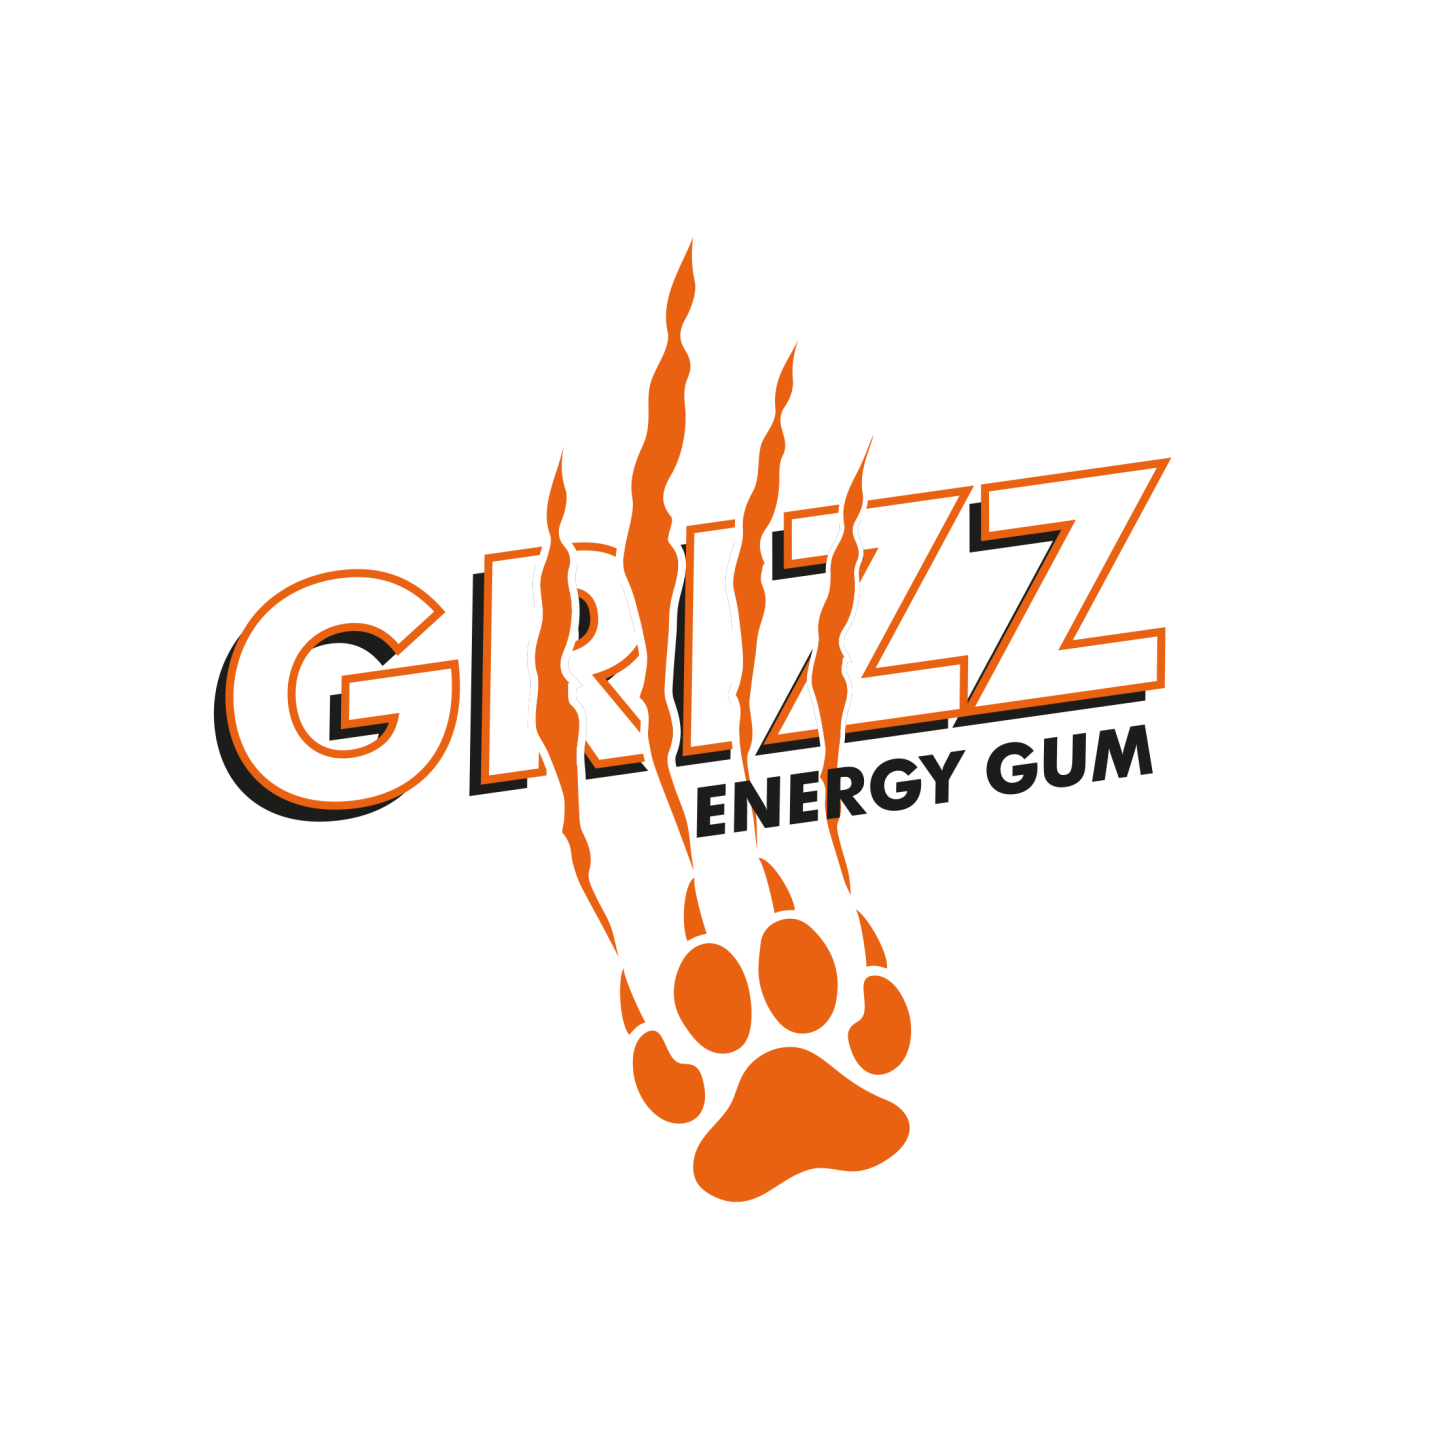 Grizz Energy Gum